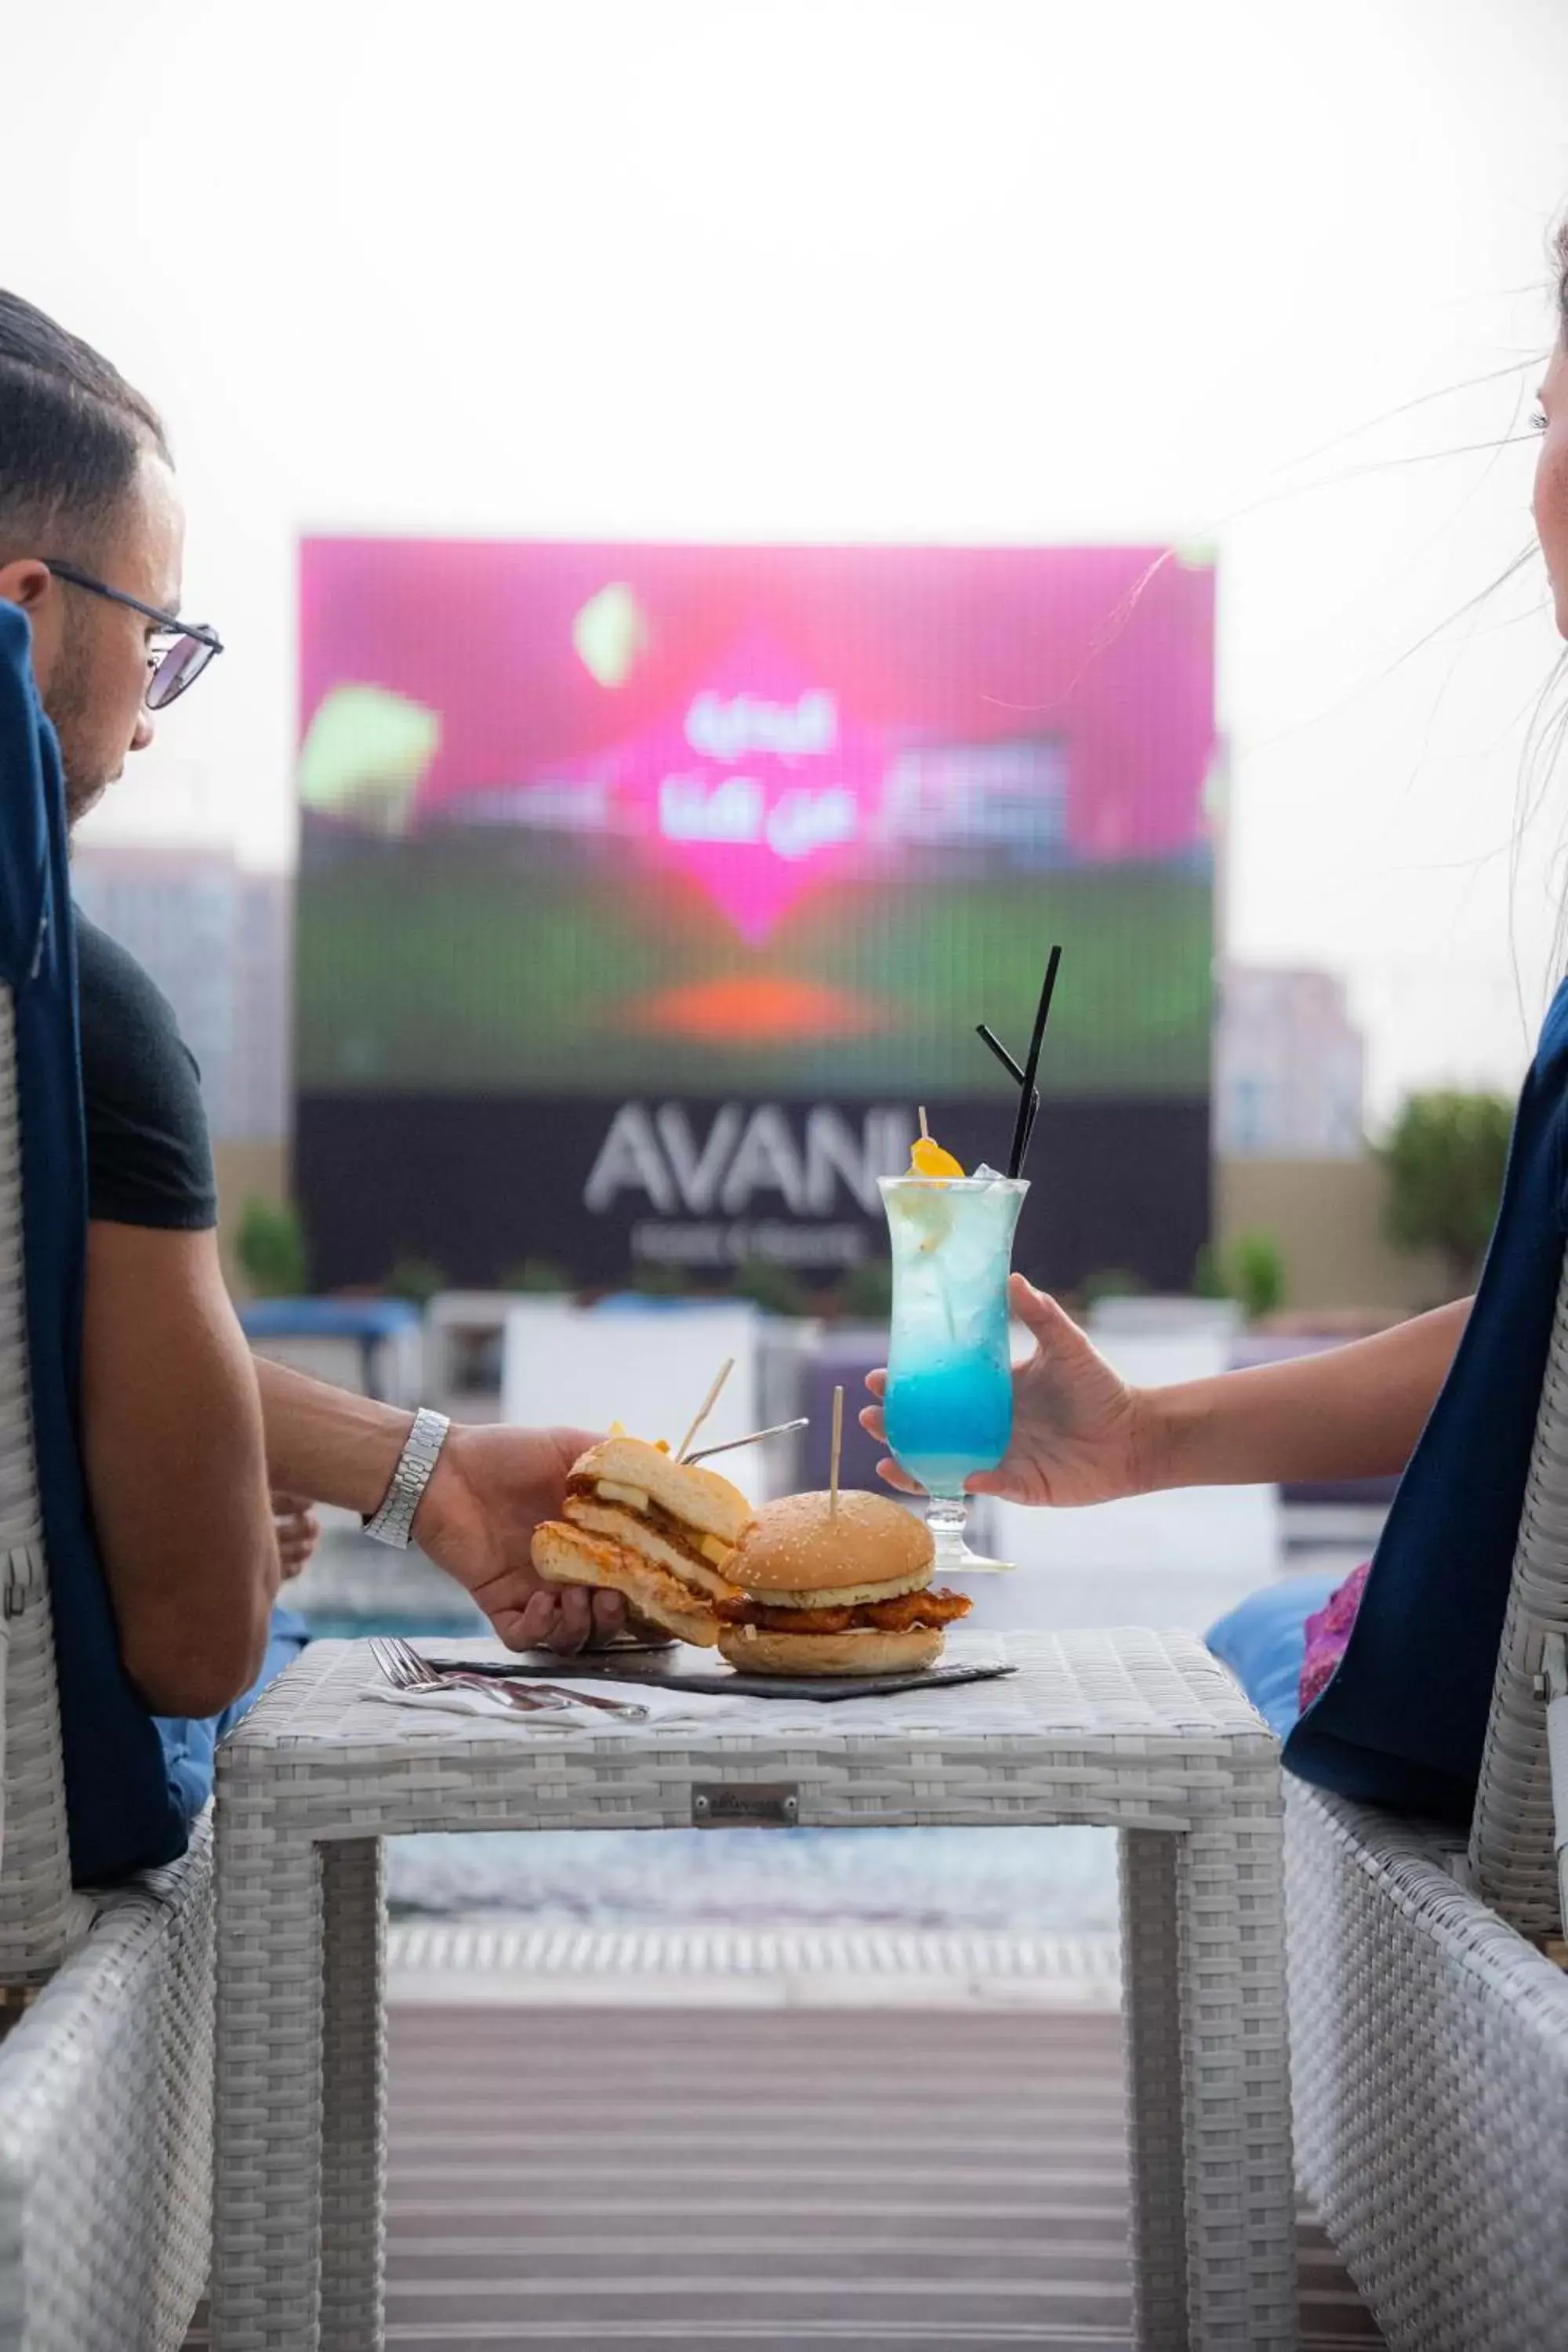 Restaurant/places to eat in Avani Ibn Battuta Dubai Hotel